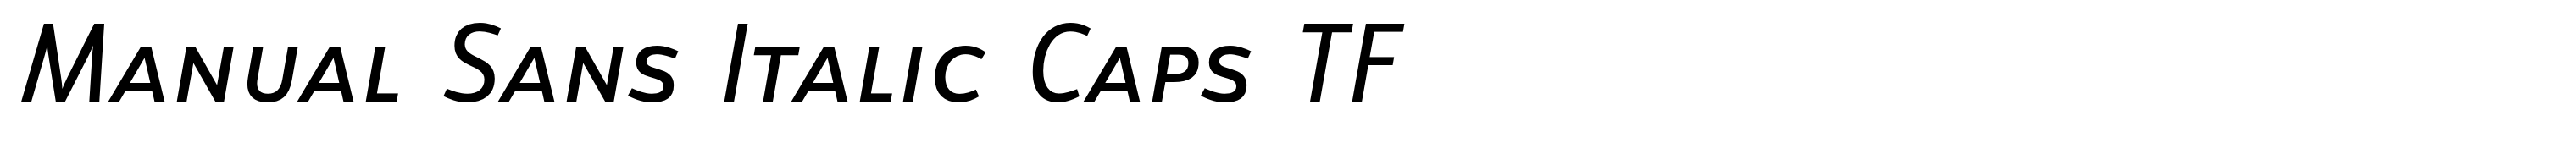 Manual Sans Italic Caps TF